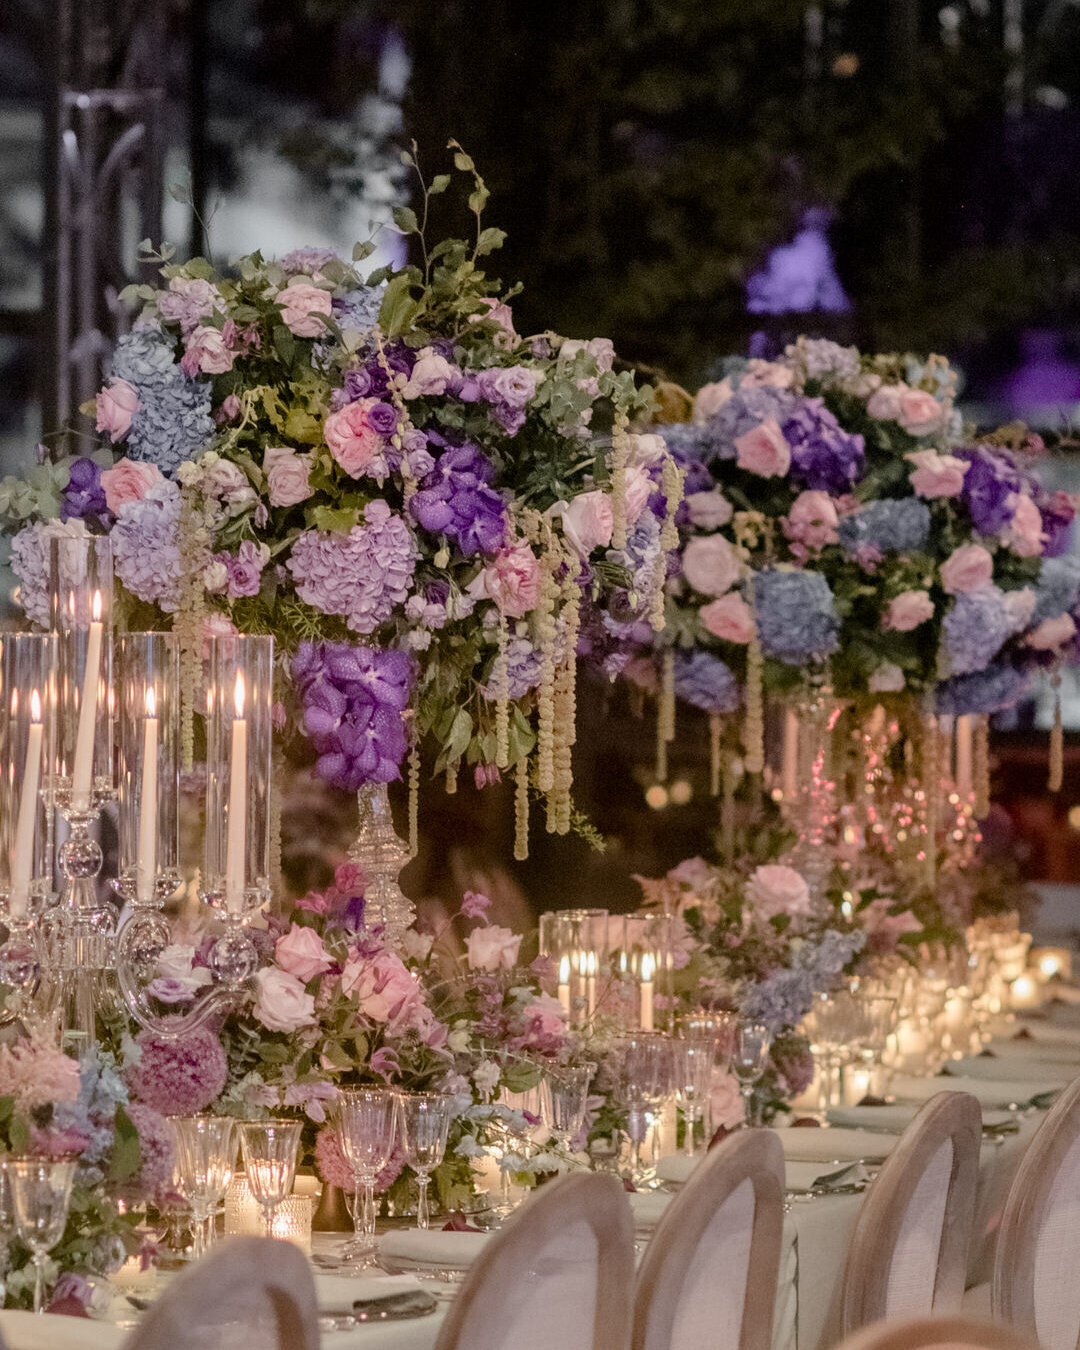 Paris Destination Wedding at Chateau de Chantilly by Alejandra Poupel Events flowers dinner table 